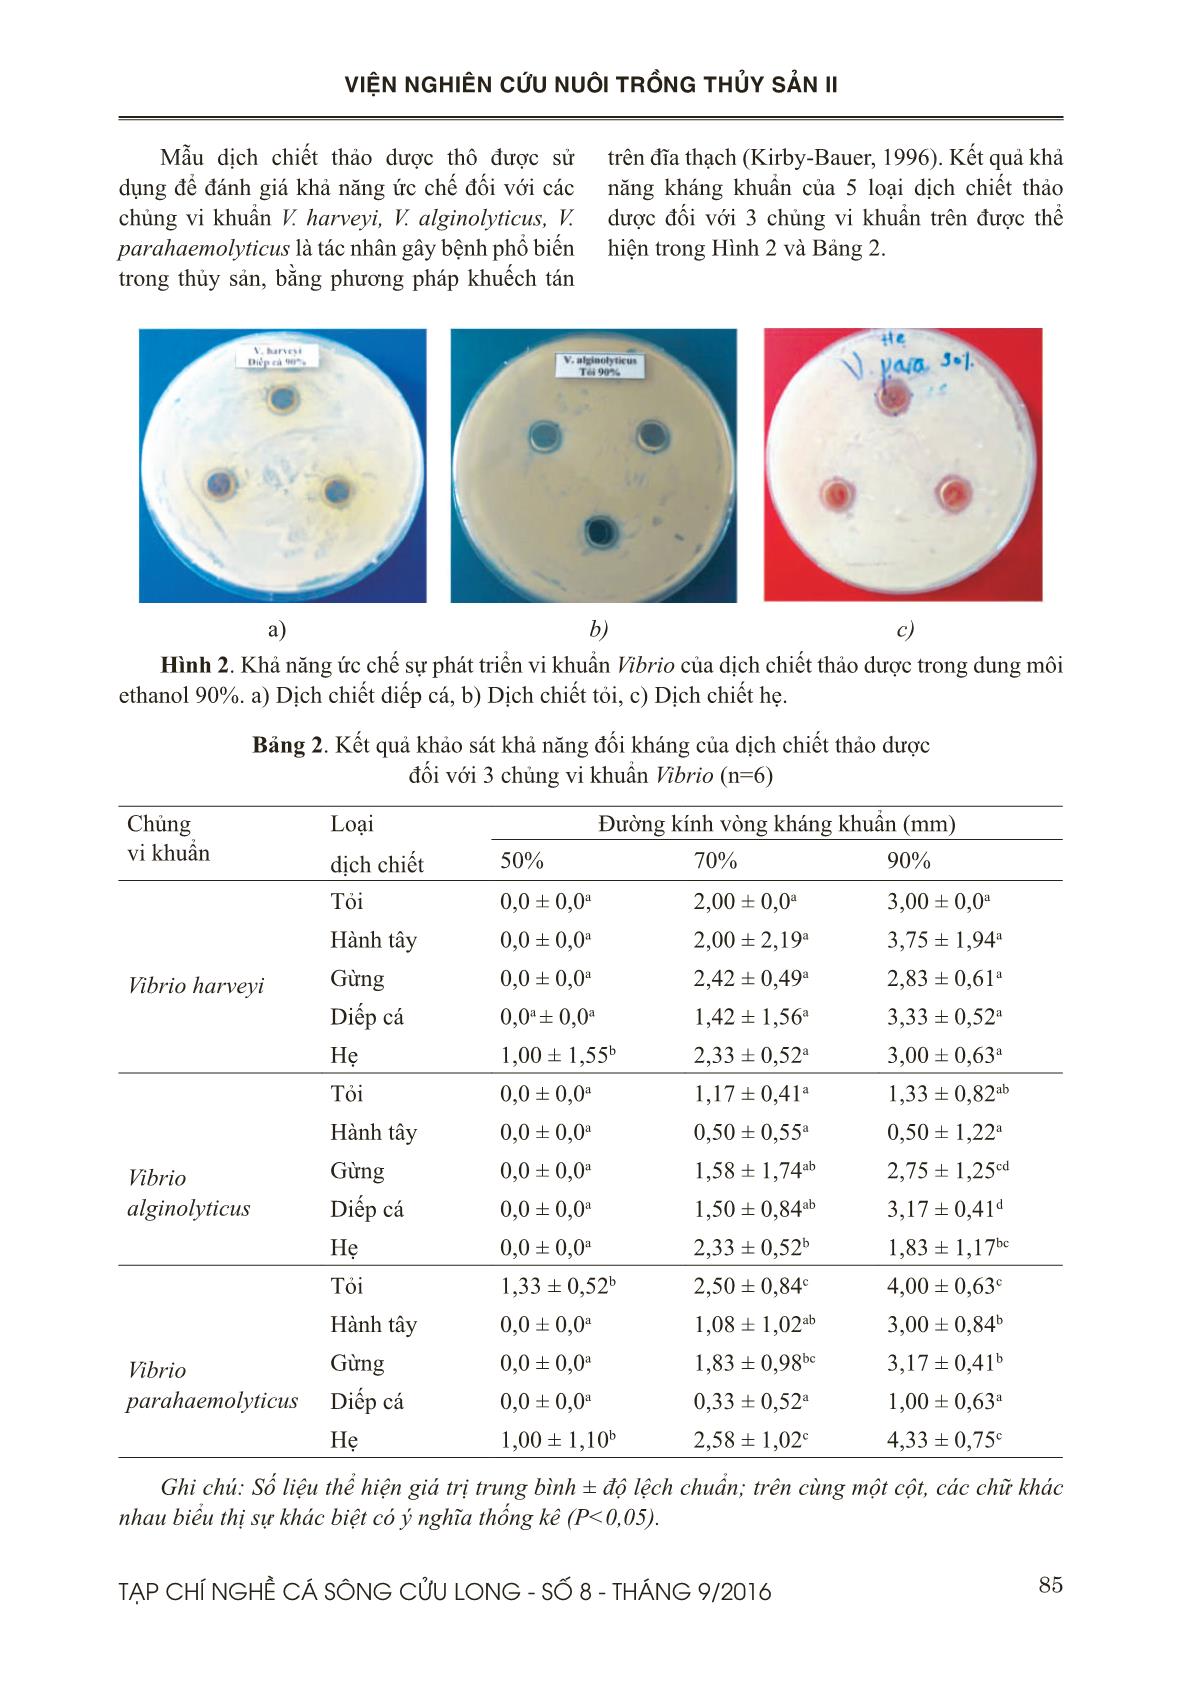 Khả năng ức chế tăng trưởng của Vibrio spp. bởi một số dịch chiết có nguồn gốc thảo dược trang 4